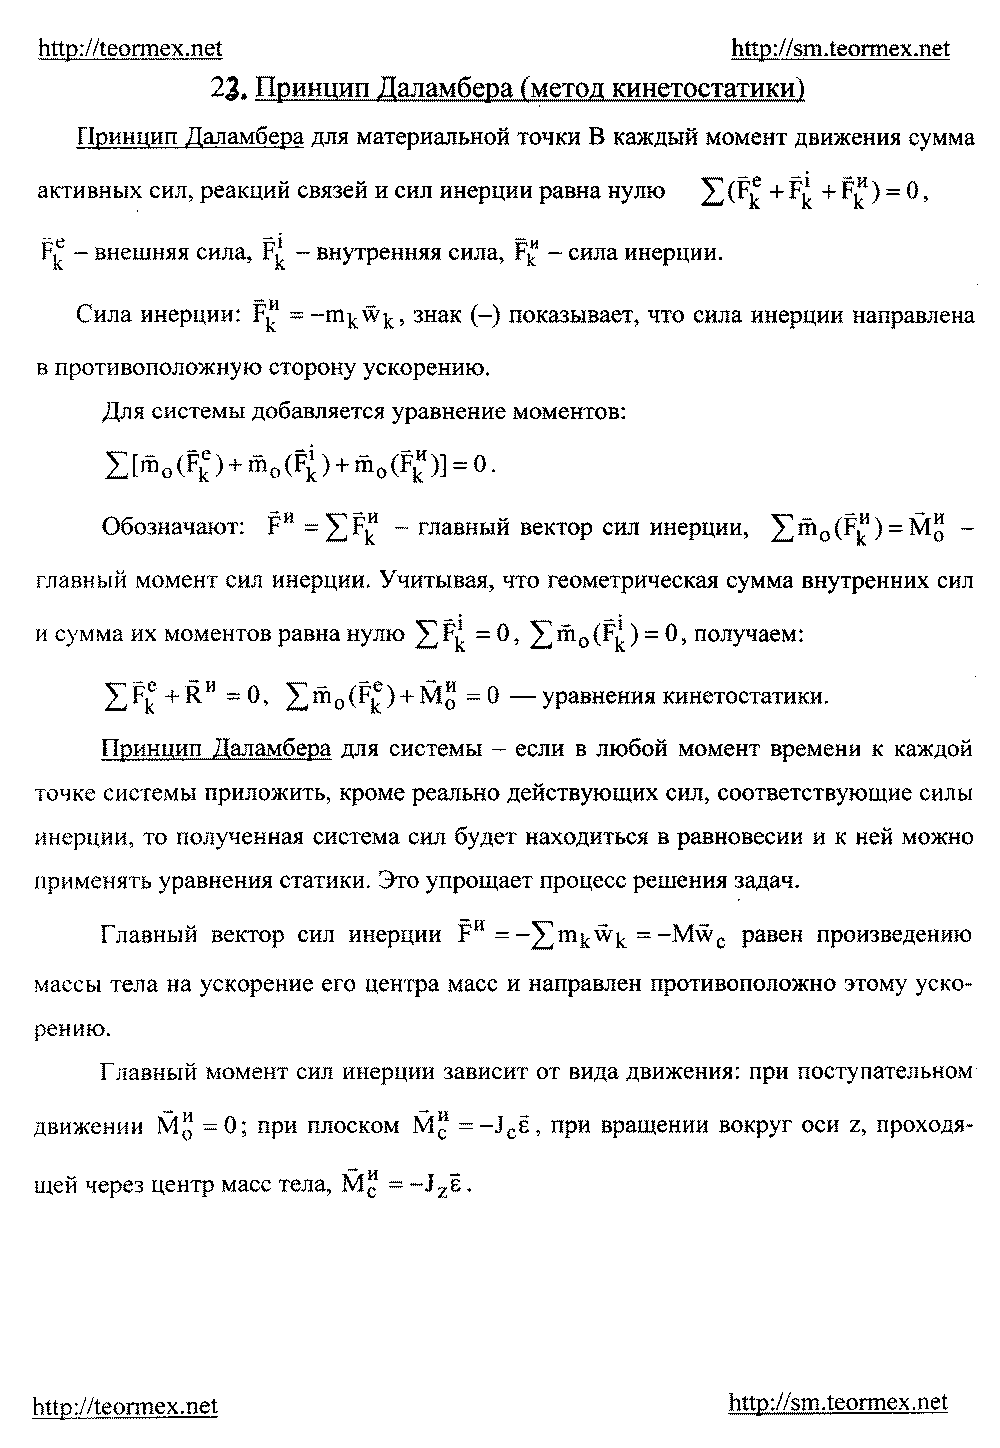 Принцип Даламбера (метод кинетостатики).